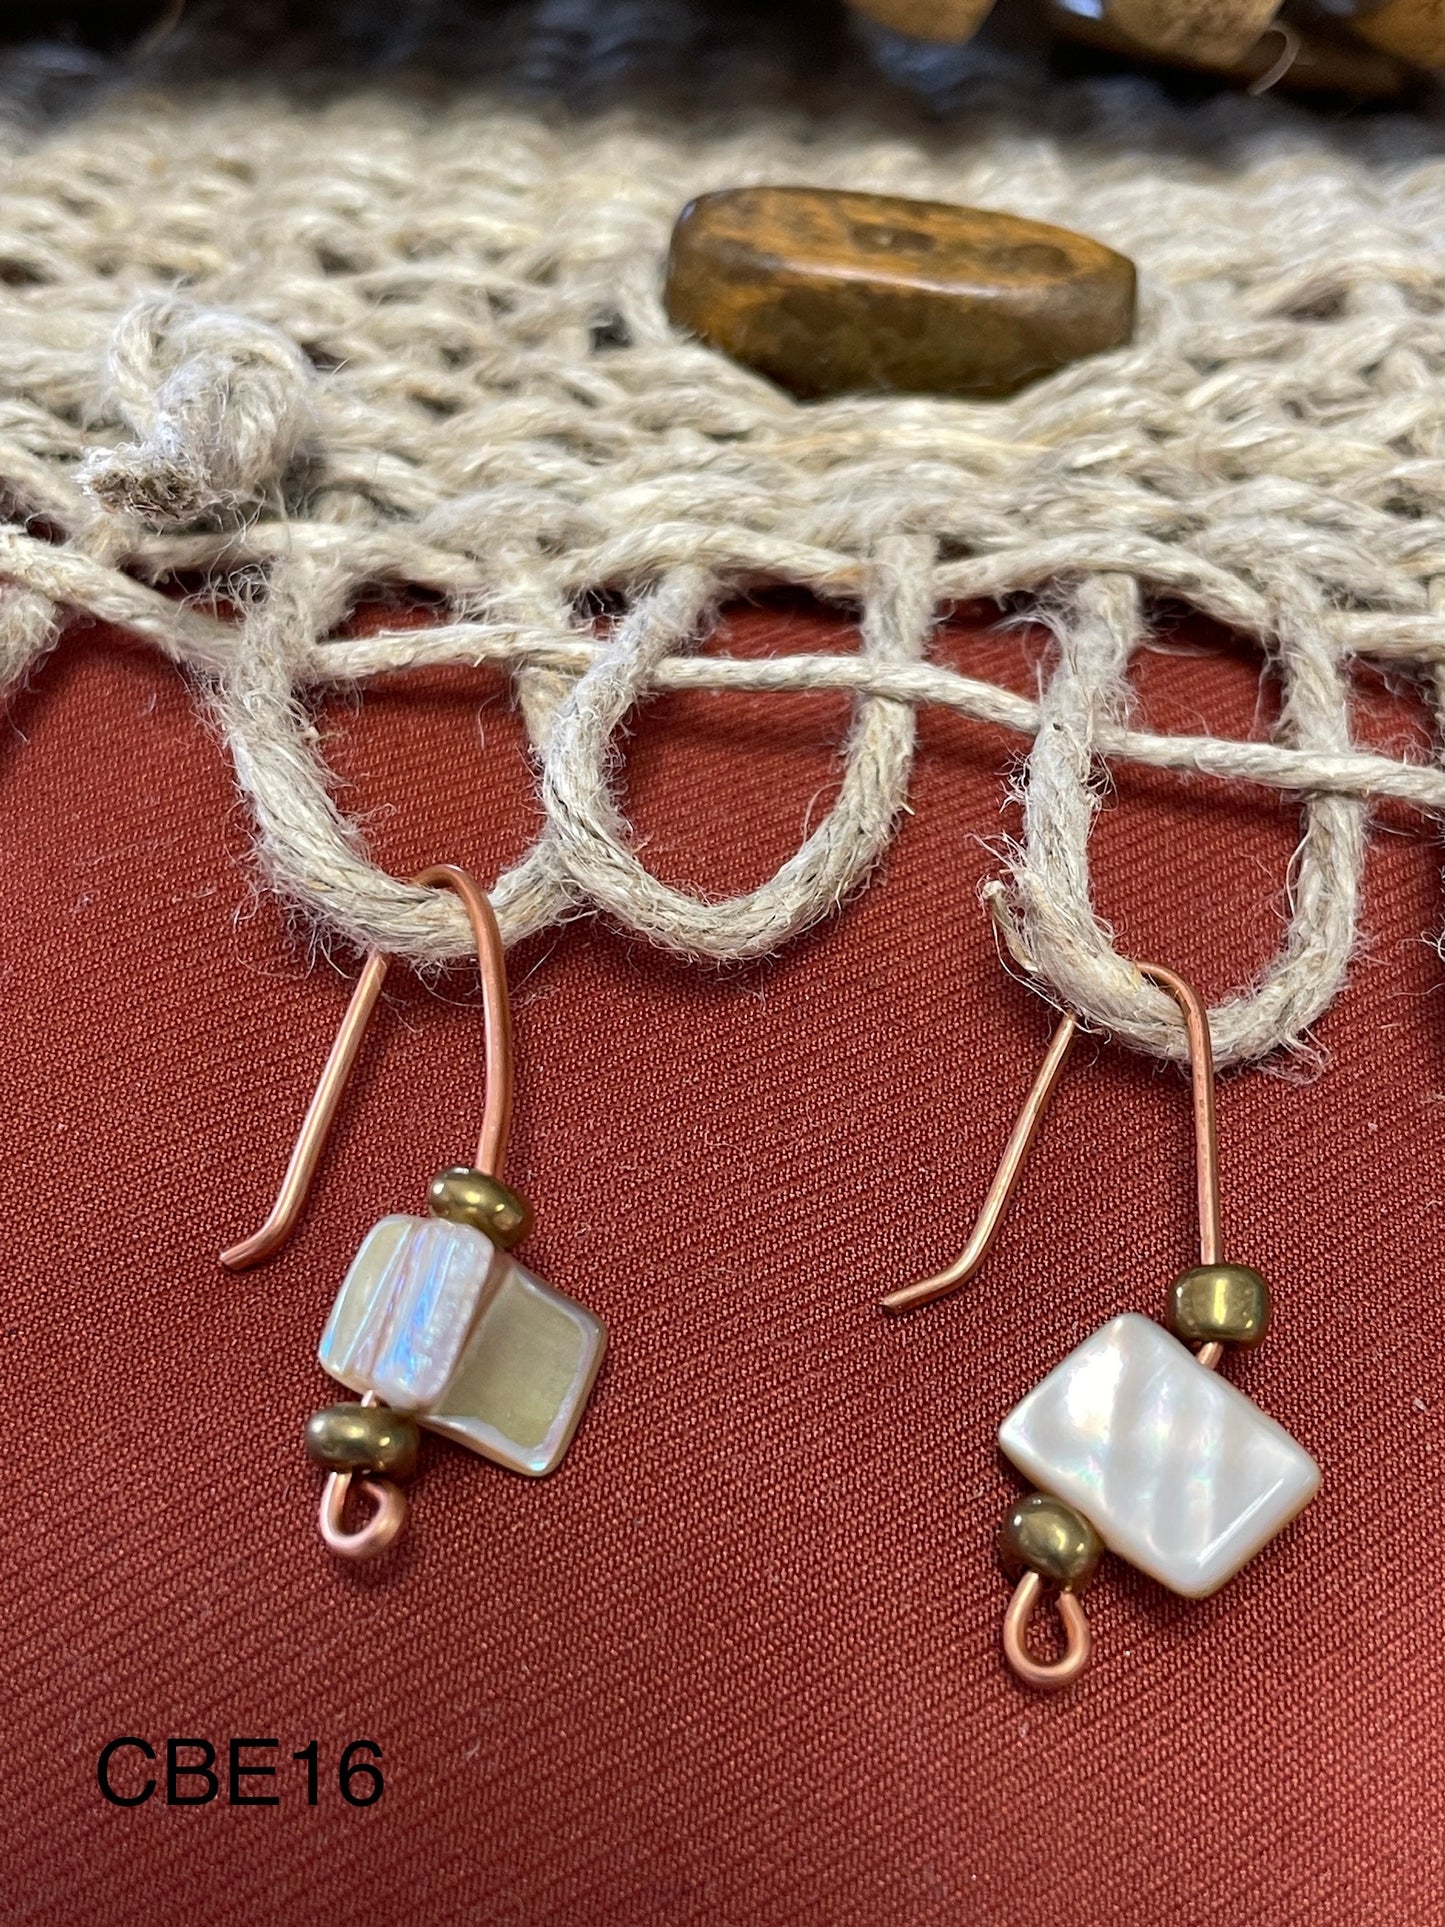 Copper Wire W/glass bead earrings CBE16